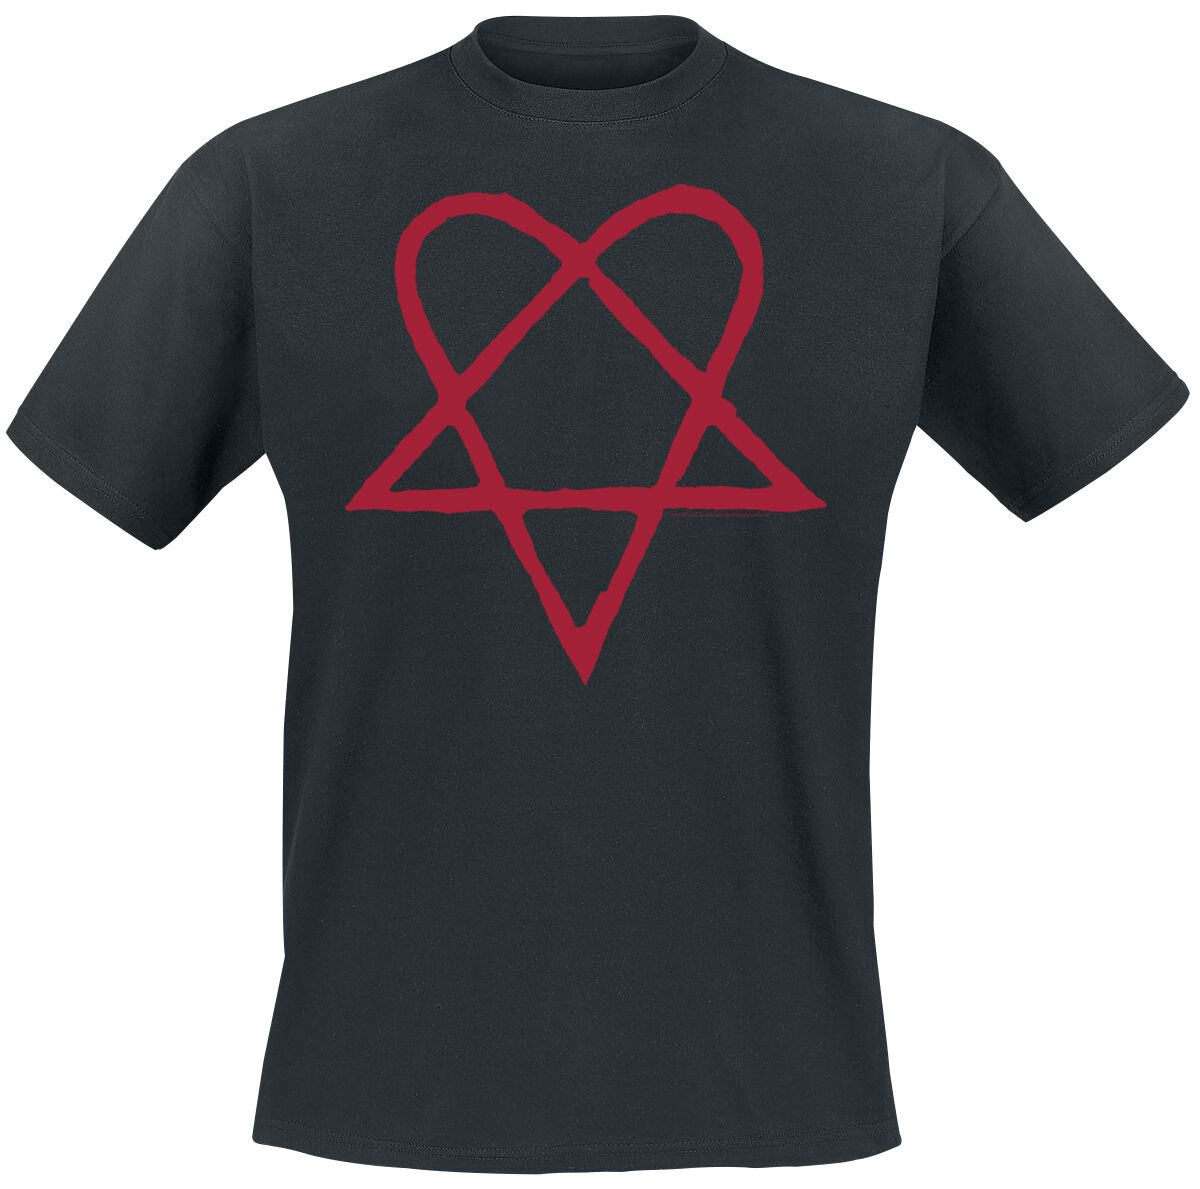 HIM T-Shirt - Dark Red Heartagram - S bis 4XL - für Männer - Größe S - schwarz  - Lizenziertes Merchandise!